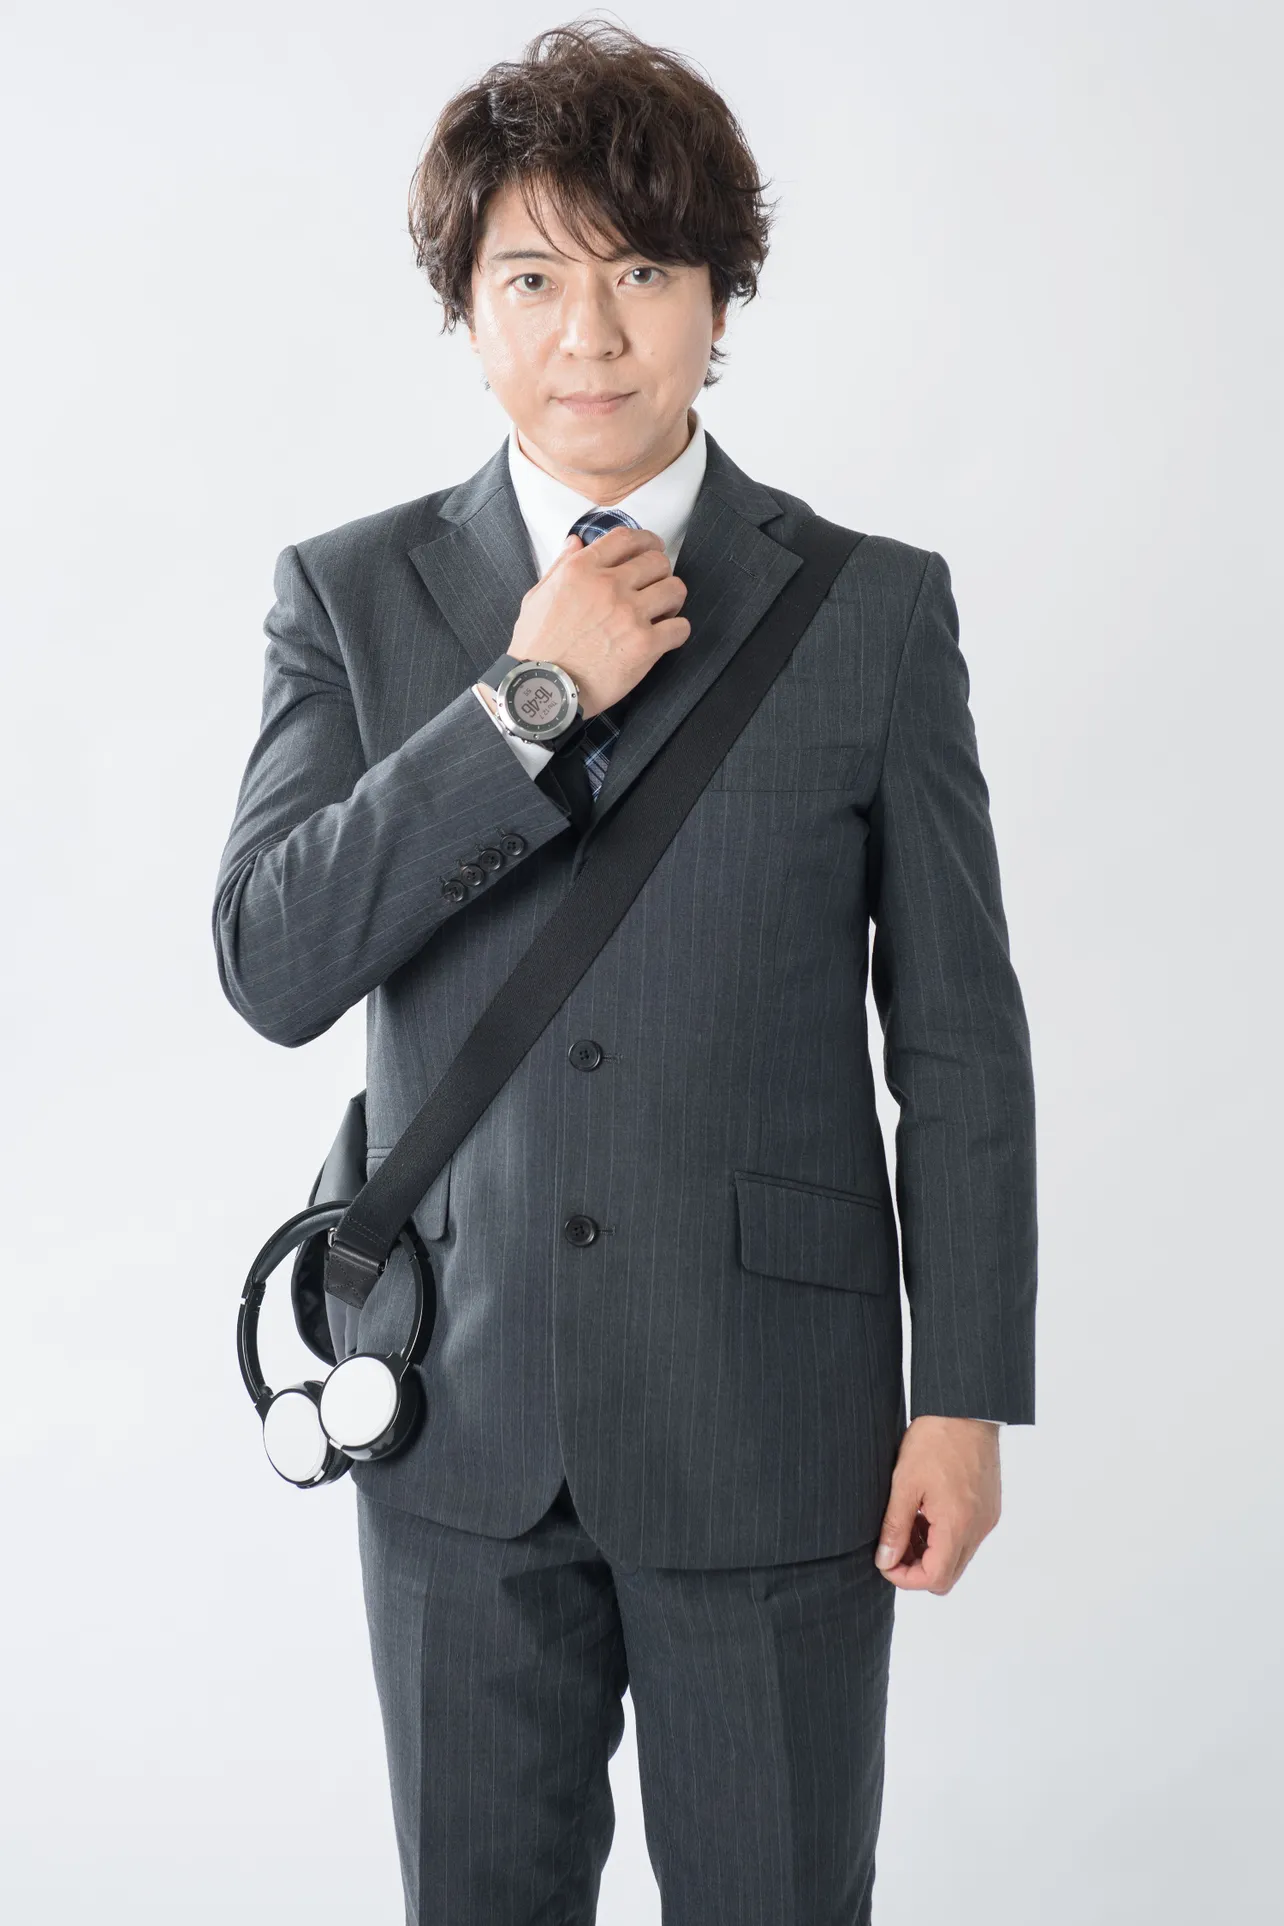 上川隆也は、自身が演じる糸村聡について「驚きや発見が絶えないキャラクター」と語る